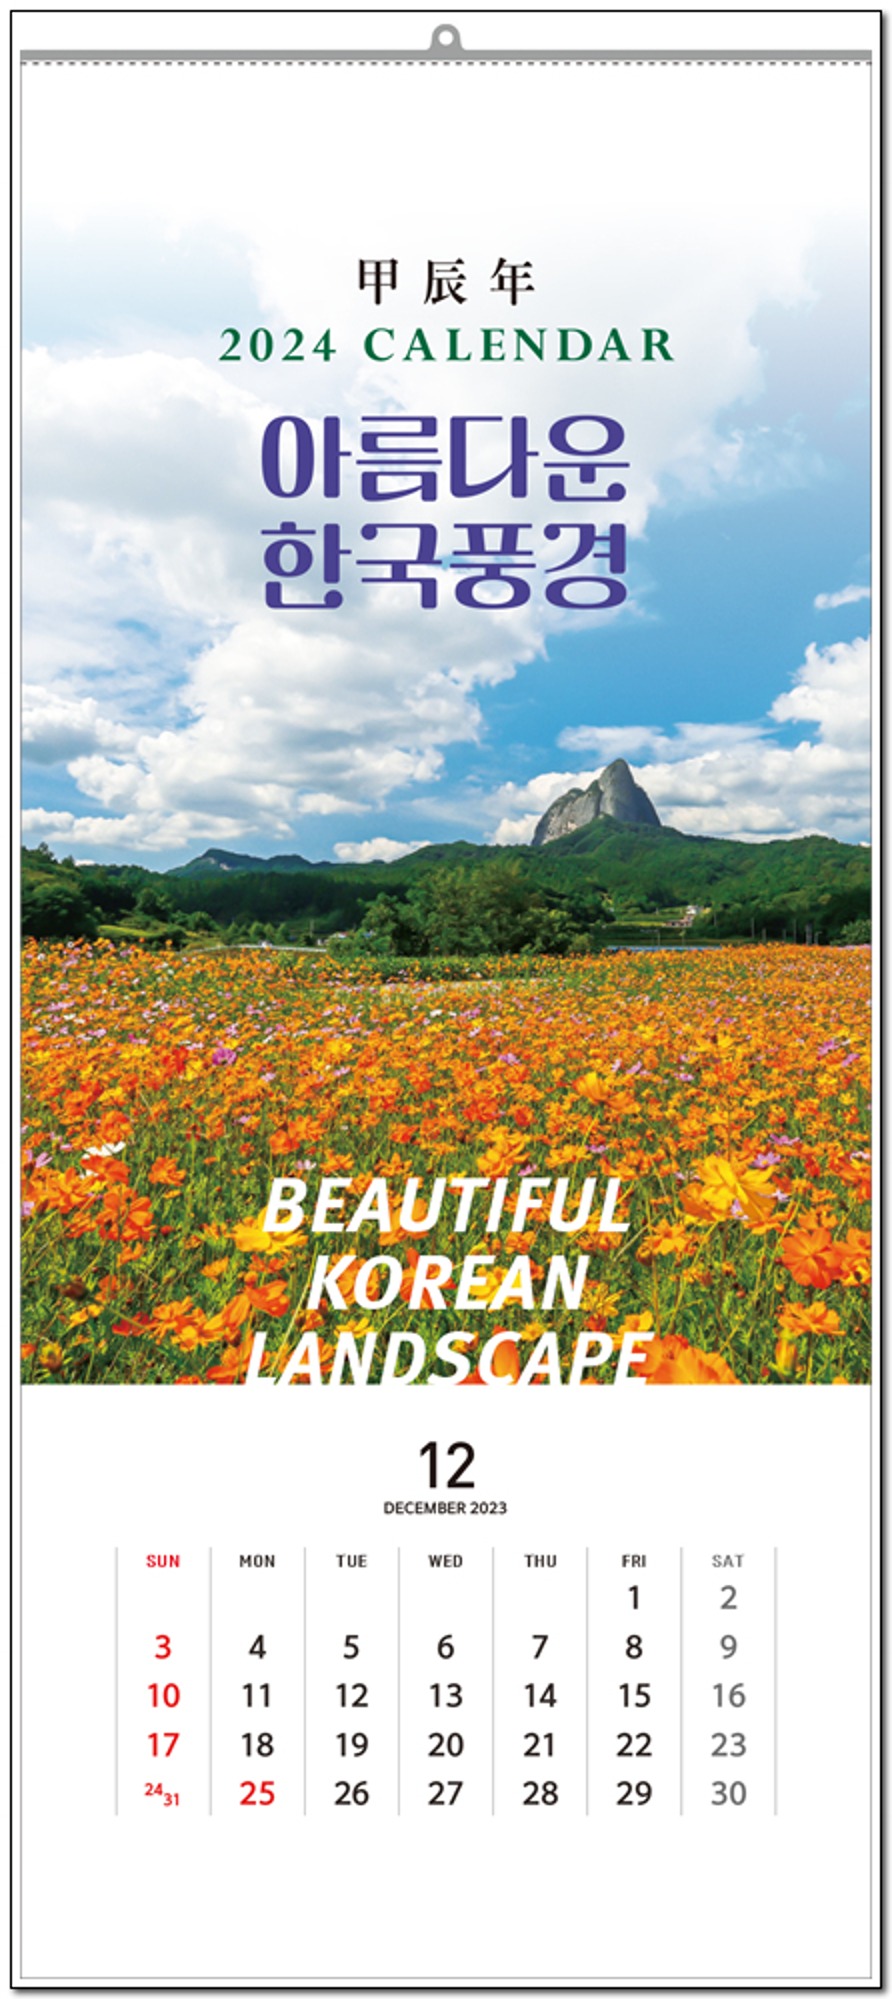 4-22 아름다운 한국풍경